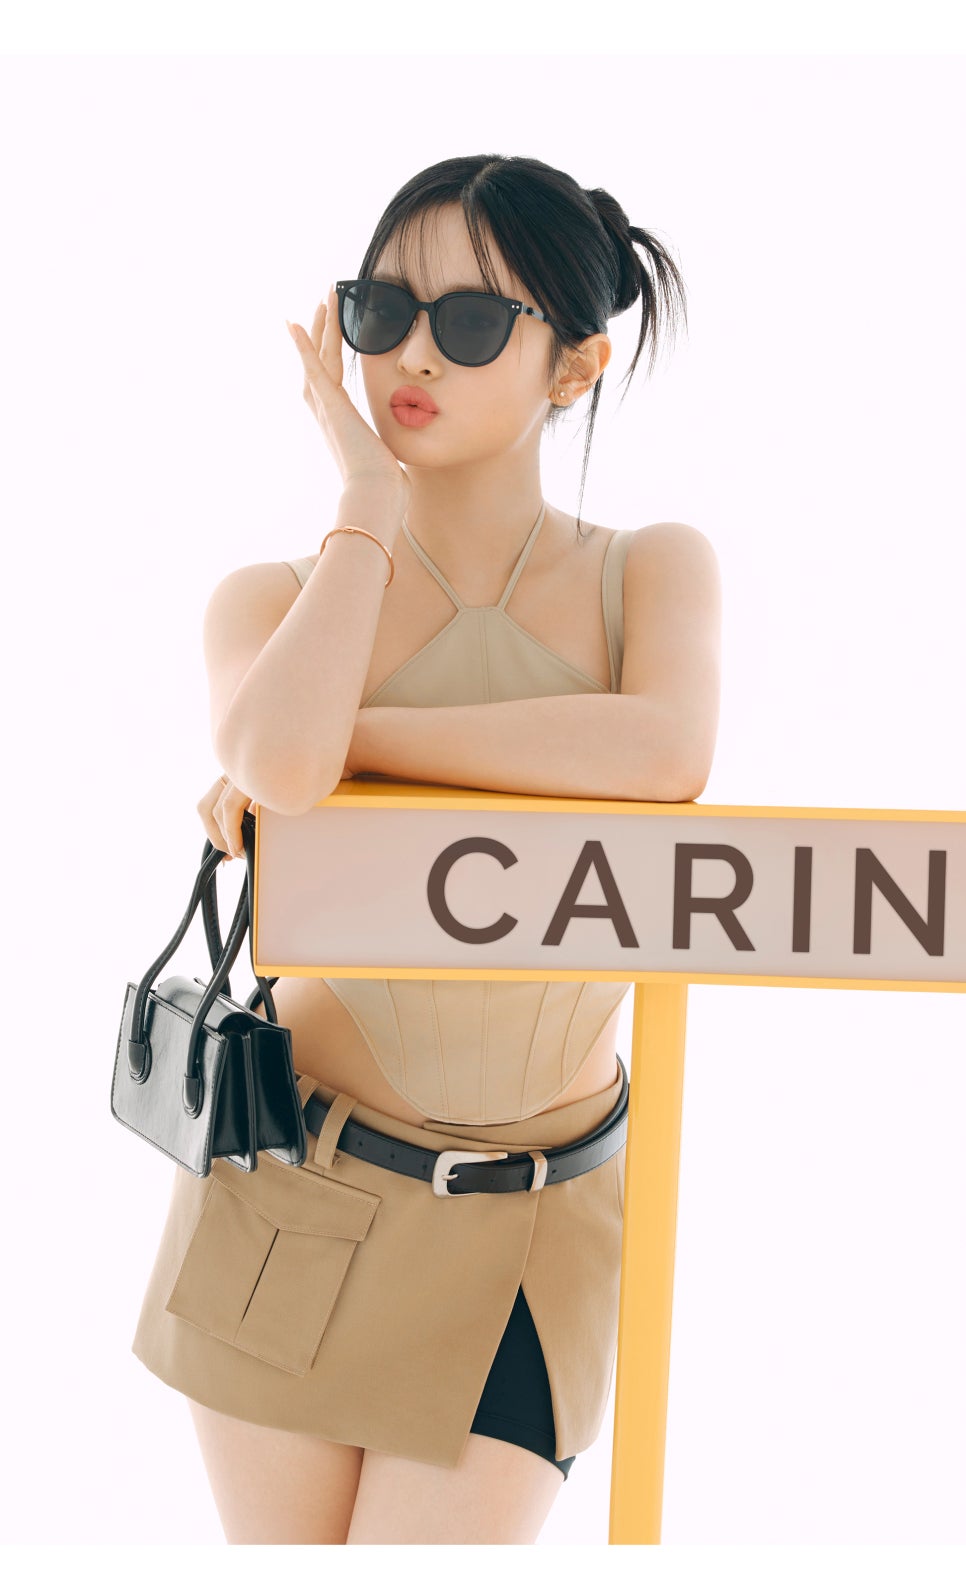 뉴진스패션 속 편광선글라스는 카린(CARIN), 남자 여자 연예인도 쓰는 브랜드! 면세점쇼핑해요